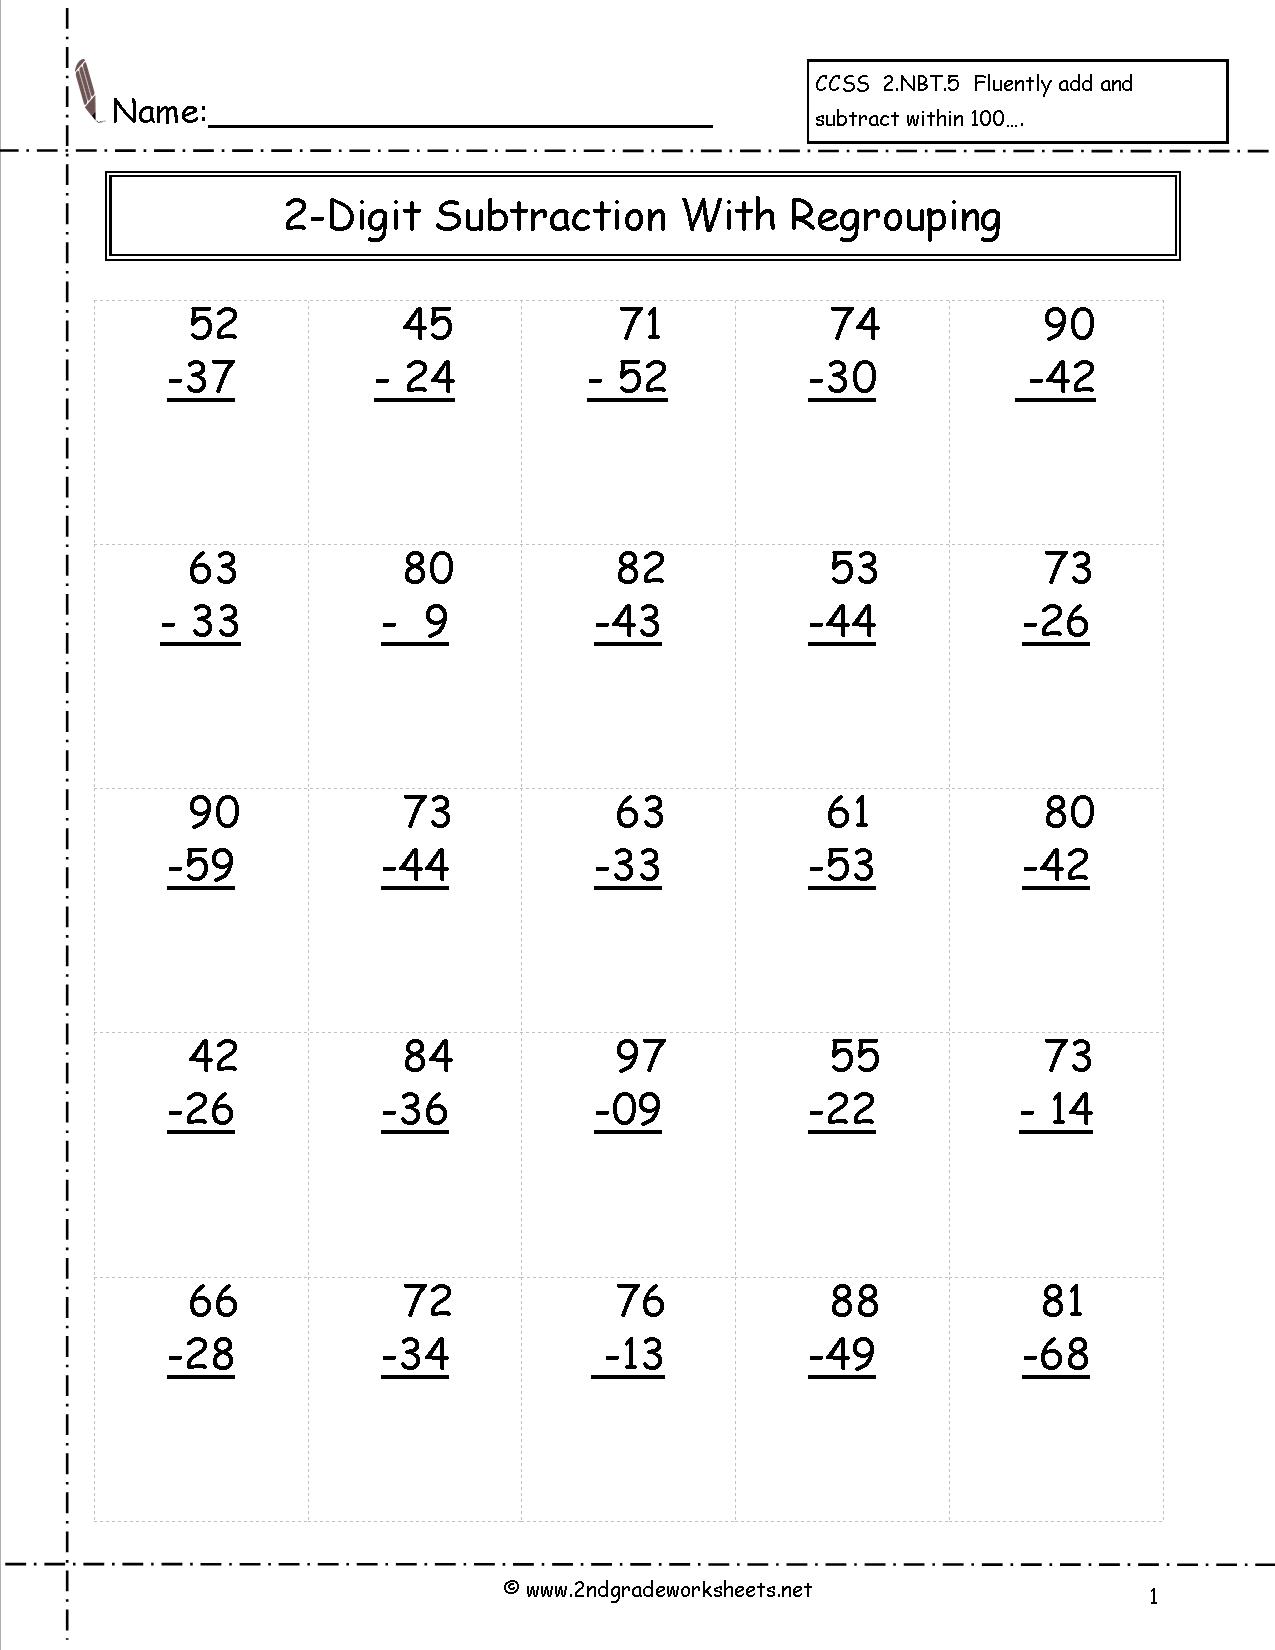 2-Digit Subtraction Worksheets 2nd Grade Image